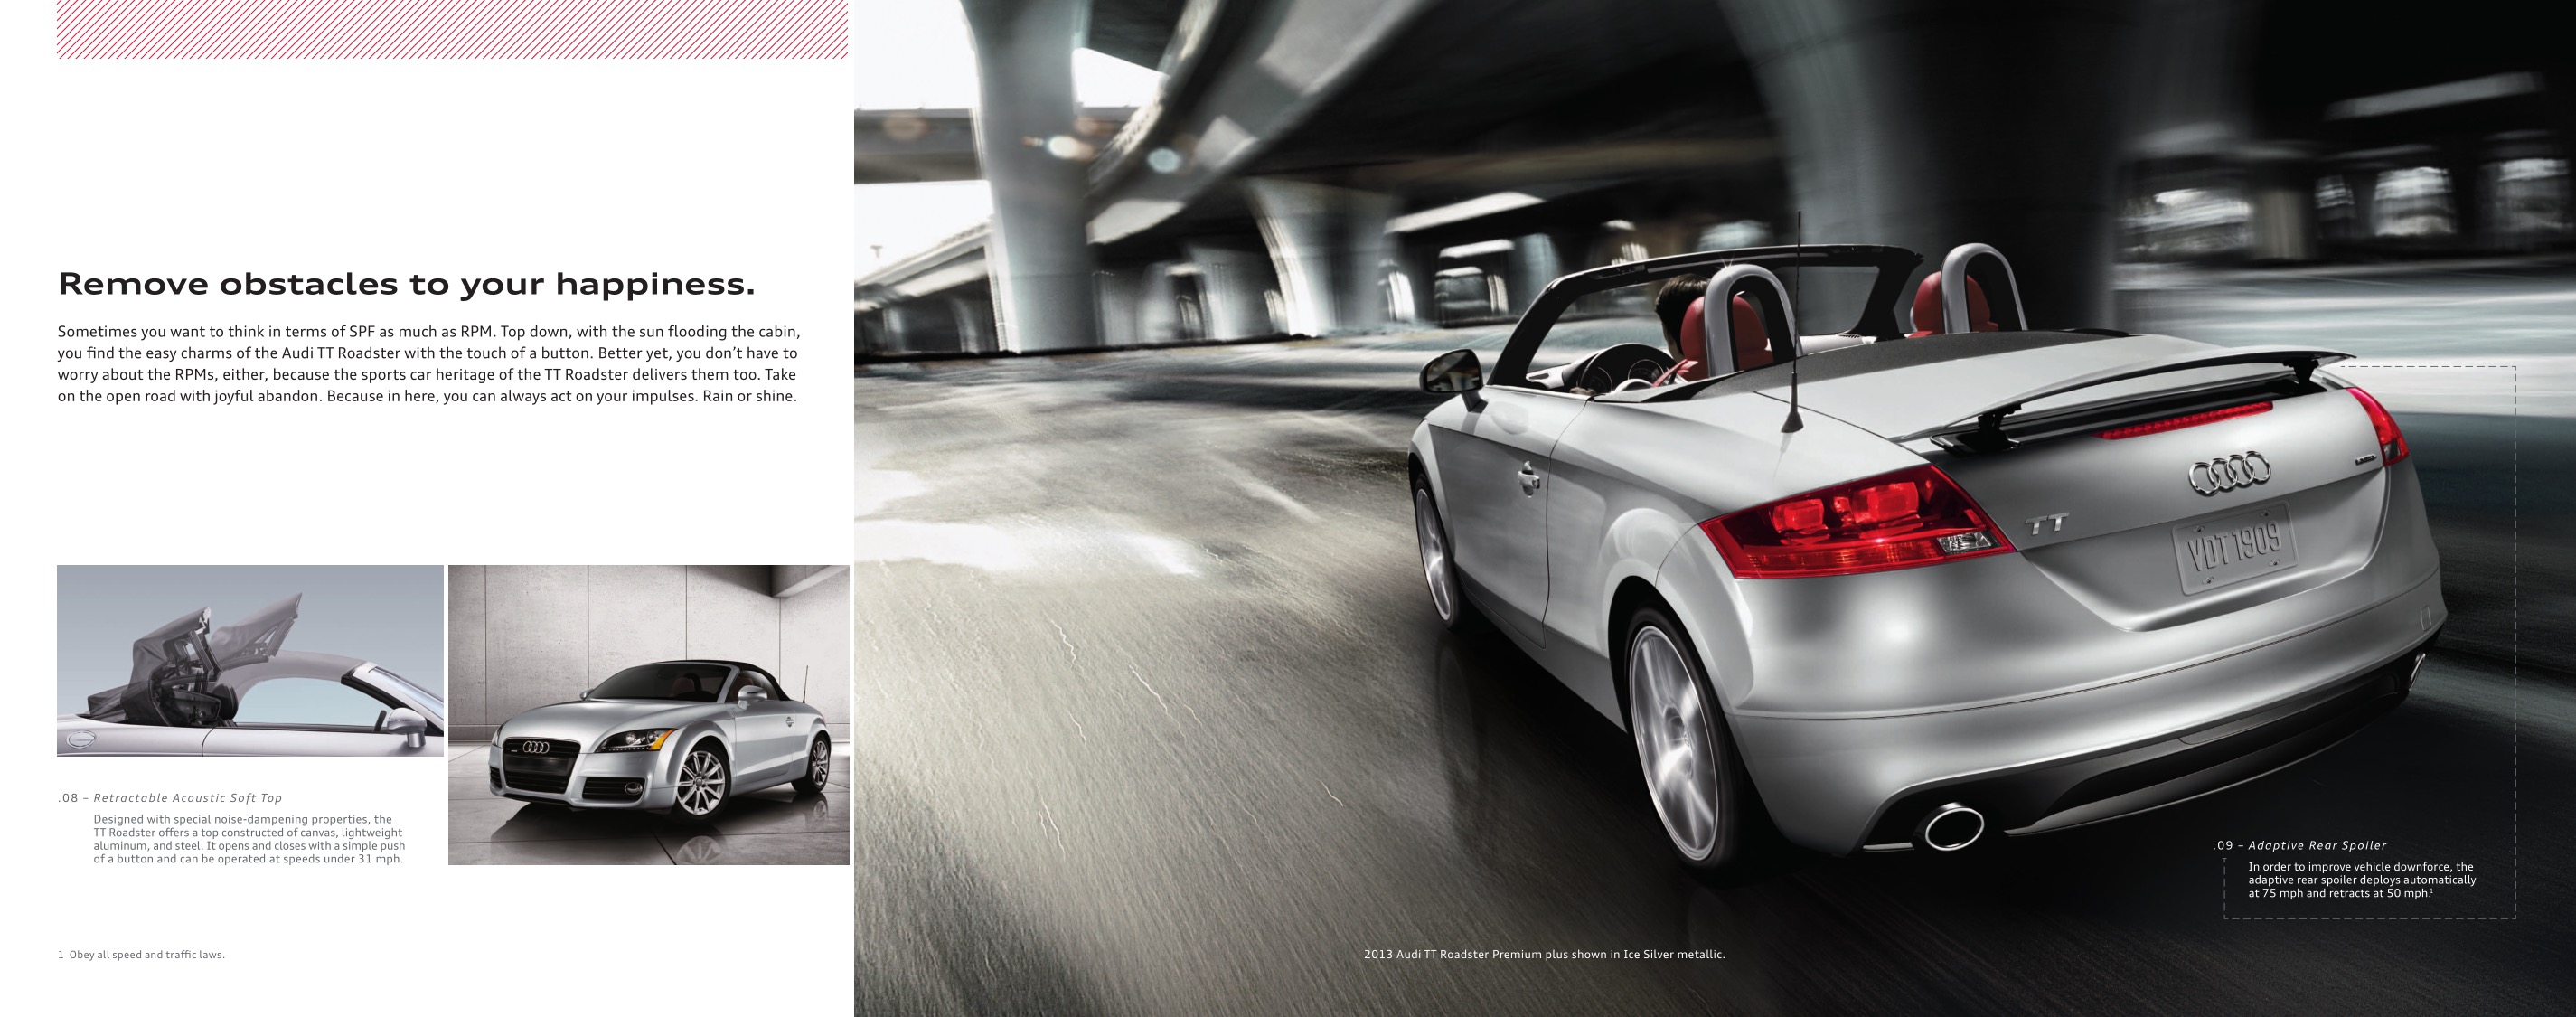 2013 Audi TT Brochure Page 10